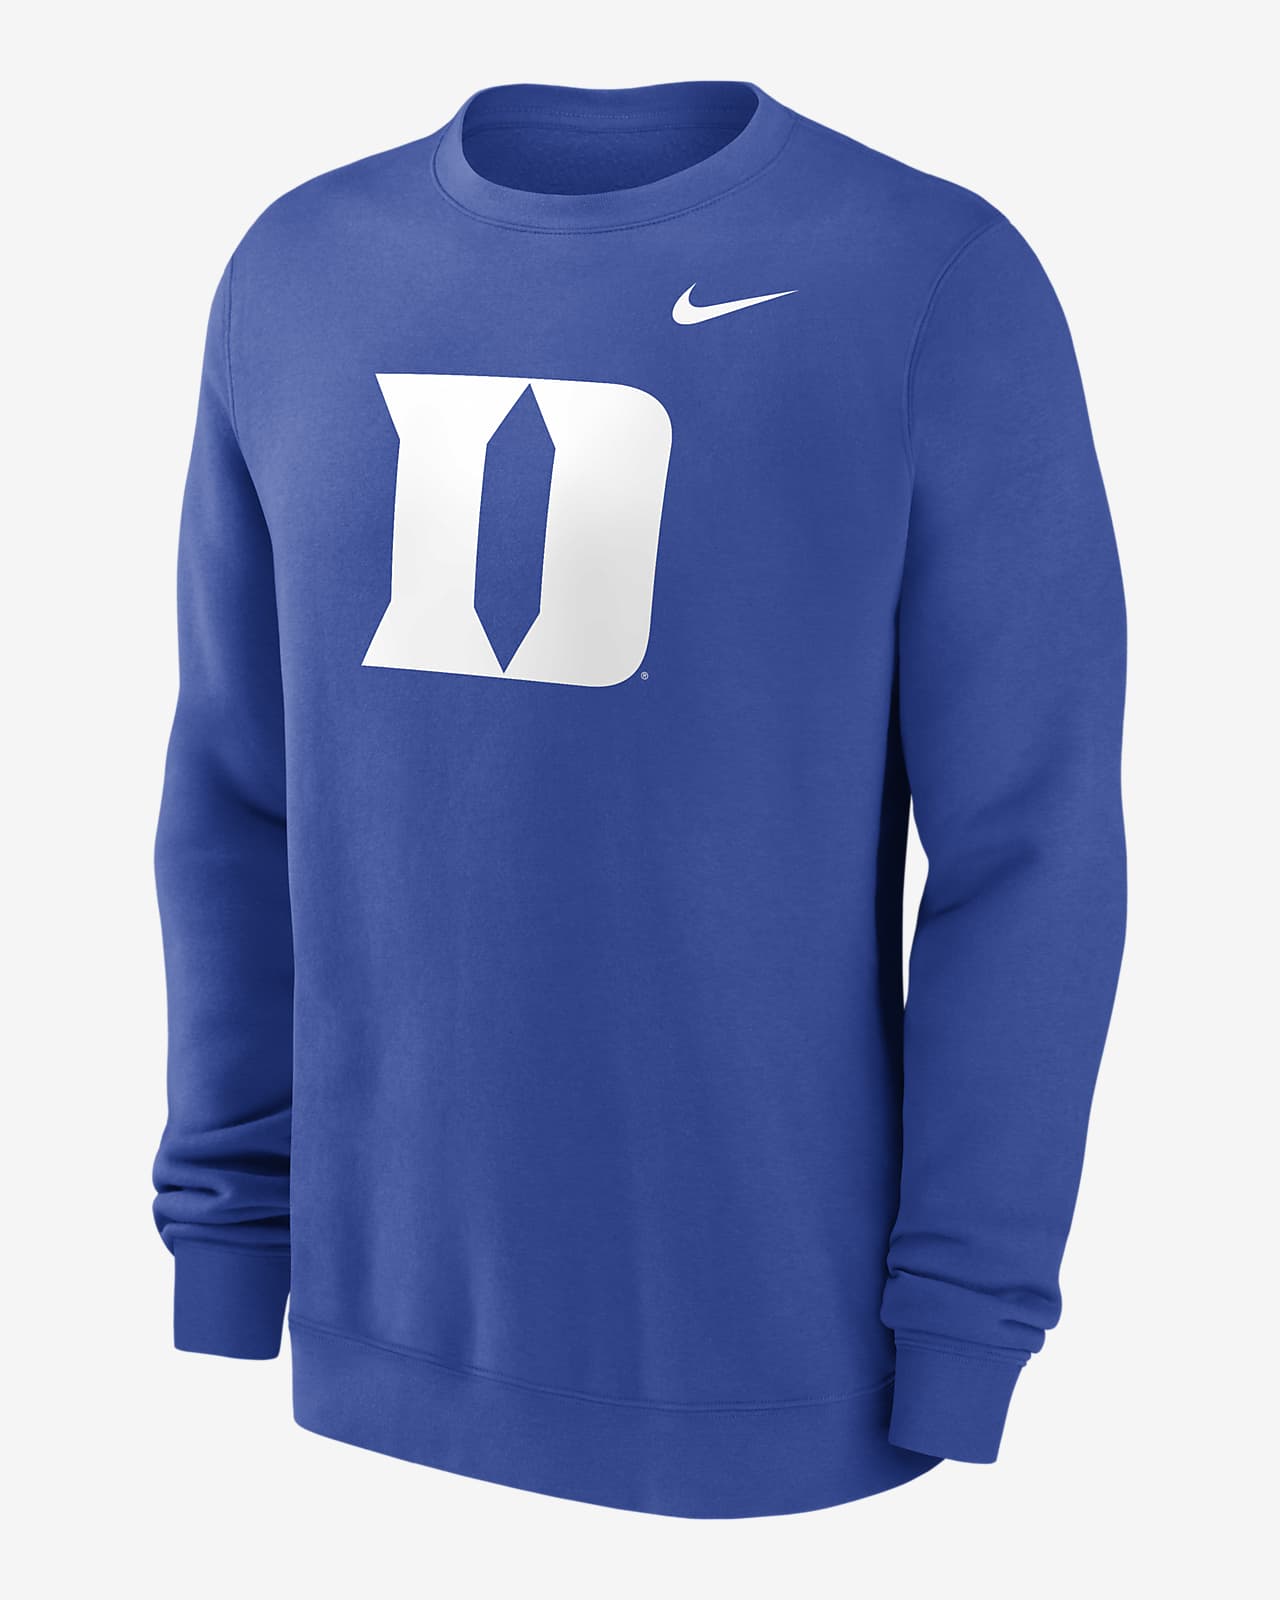 Duke Blue Devils Primetime Evergreen Logo Men's Nike College Pullover Crew